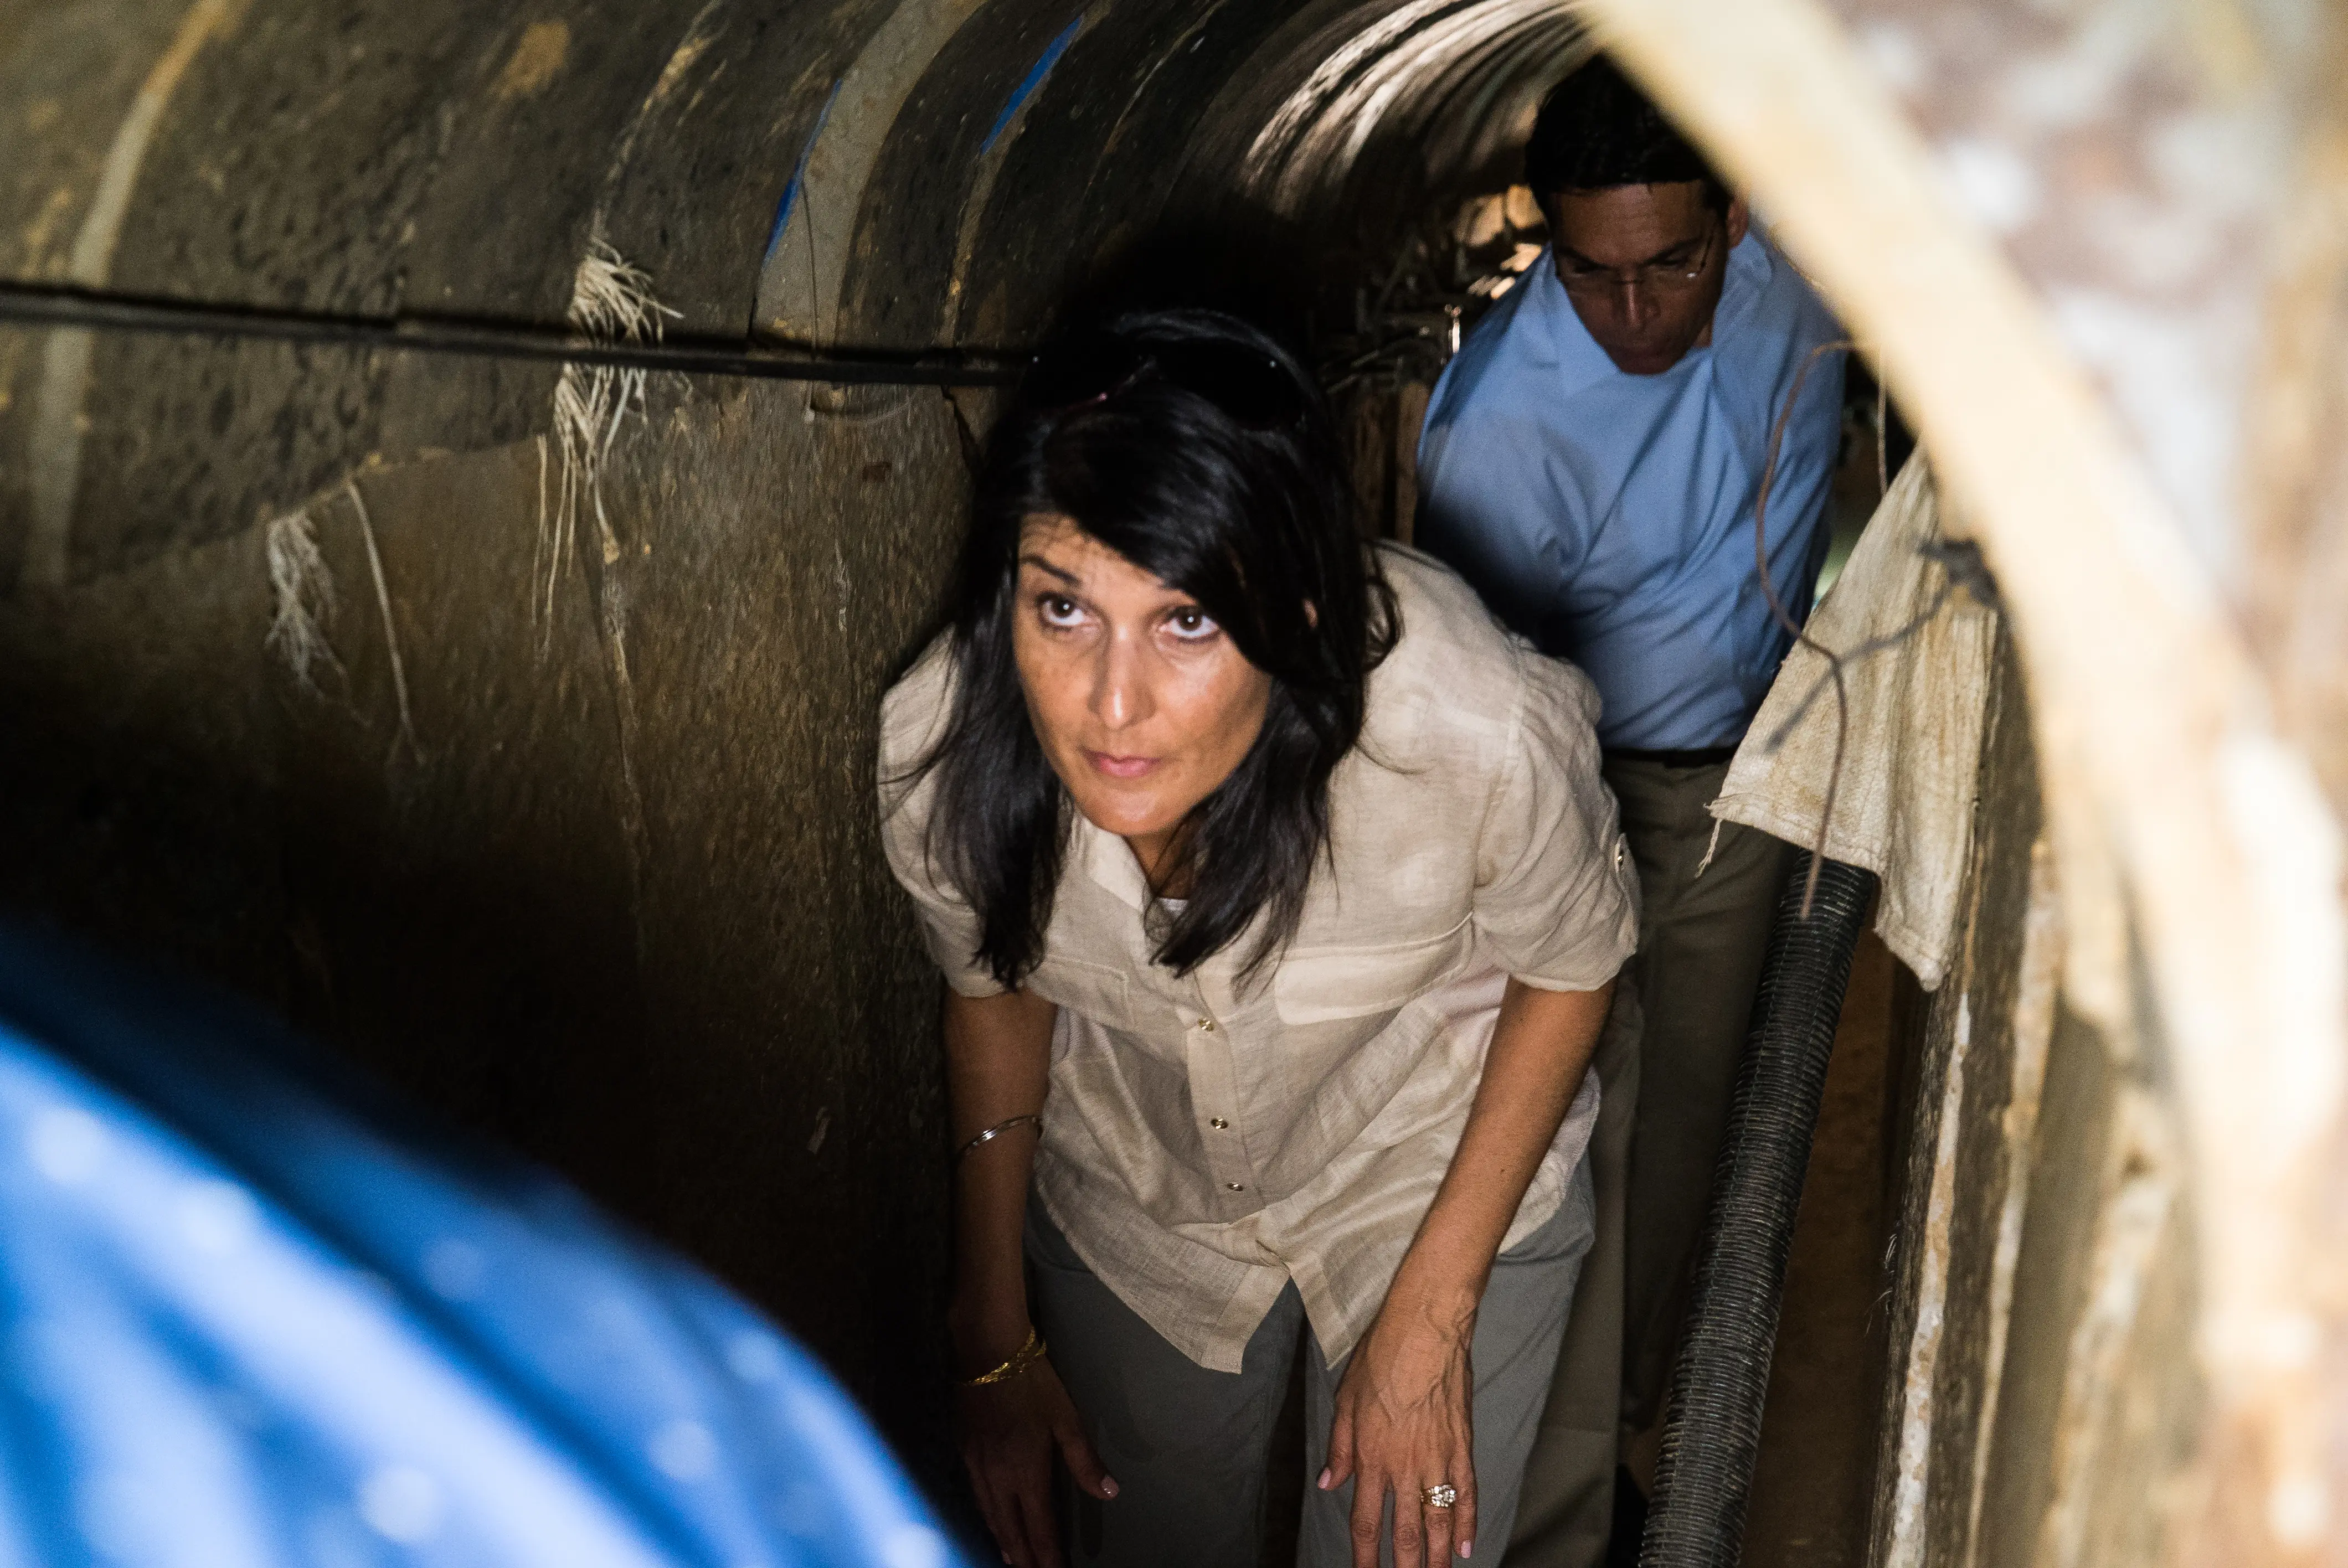 שגרירת ארה"ב באו"ם היילי במנהרה בעוטף עזה